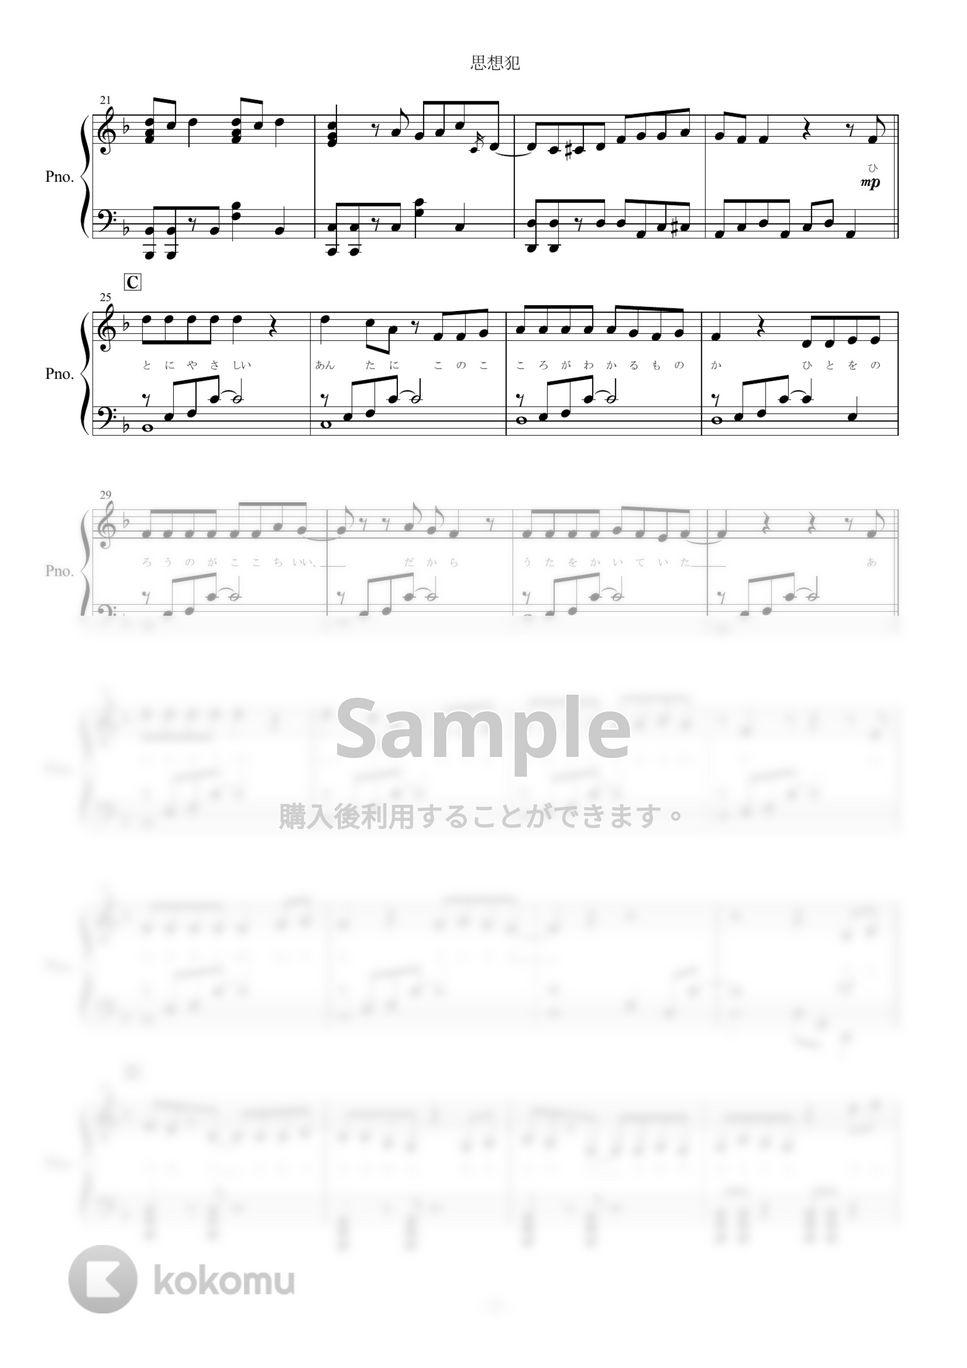 ヨルシカ - 思想犯 (ピアノ楽譜/全９ページ) by yoshi